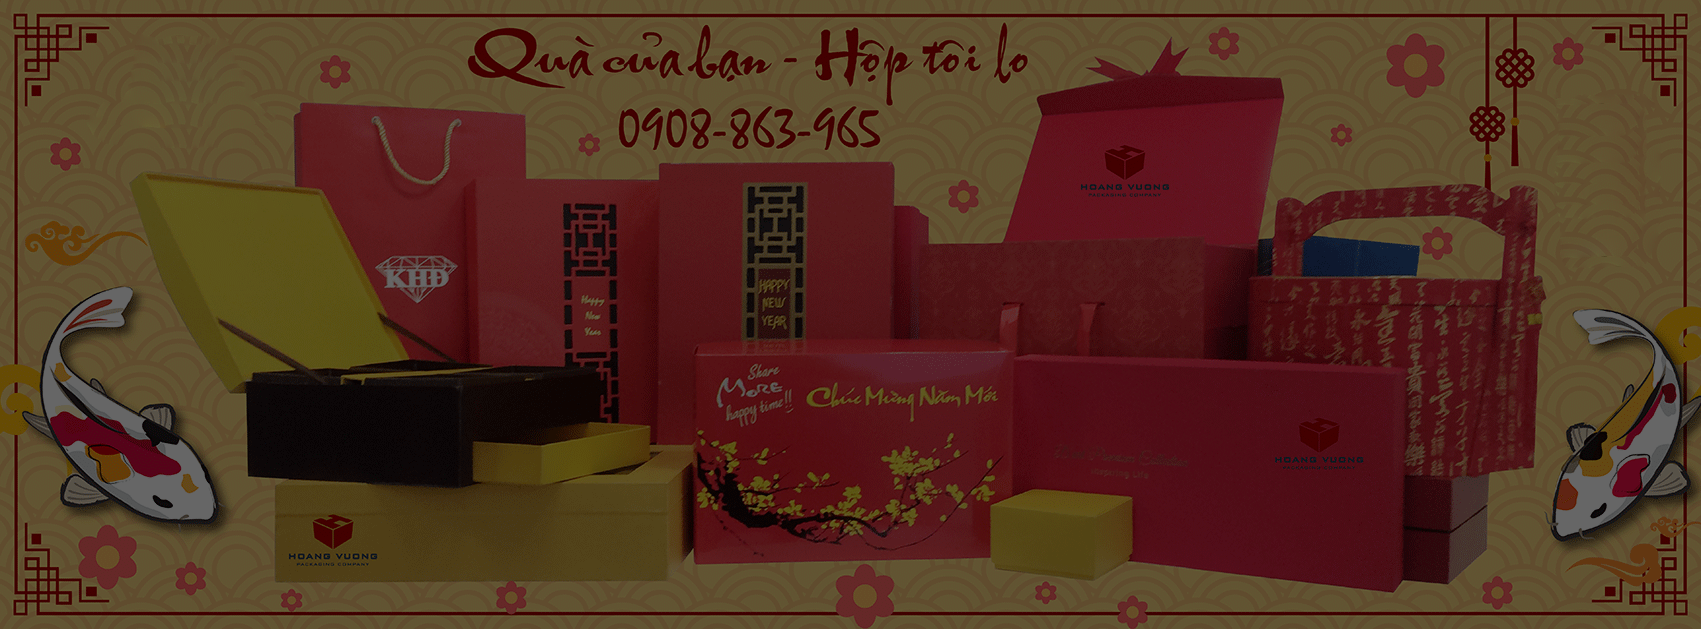 Bao bì giấy Hoàng Vương - Hoang Vuong Packaging Company